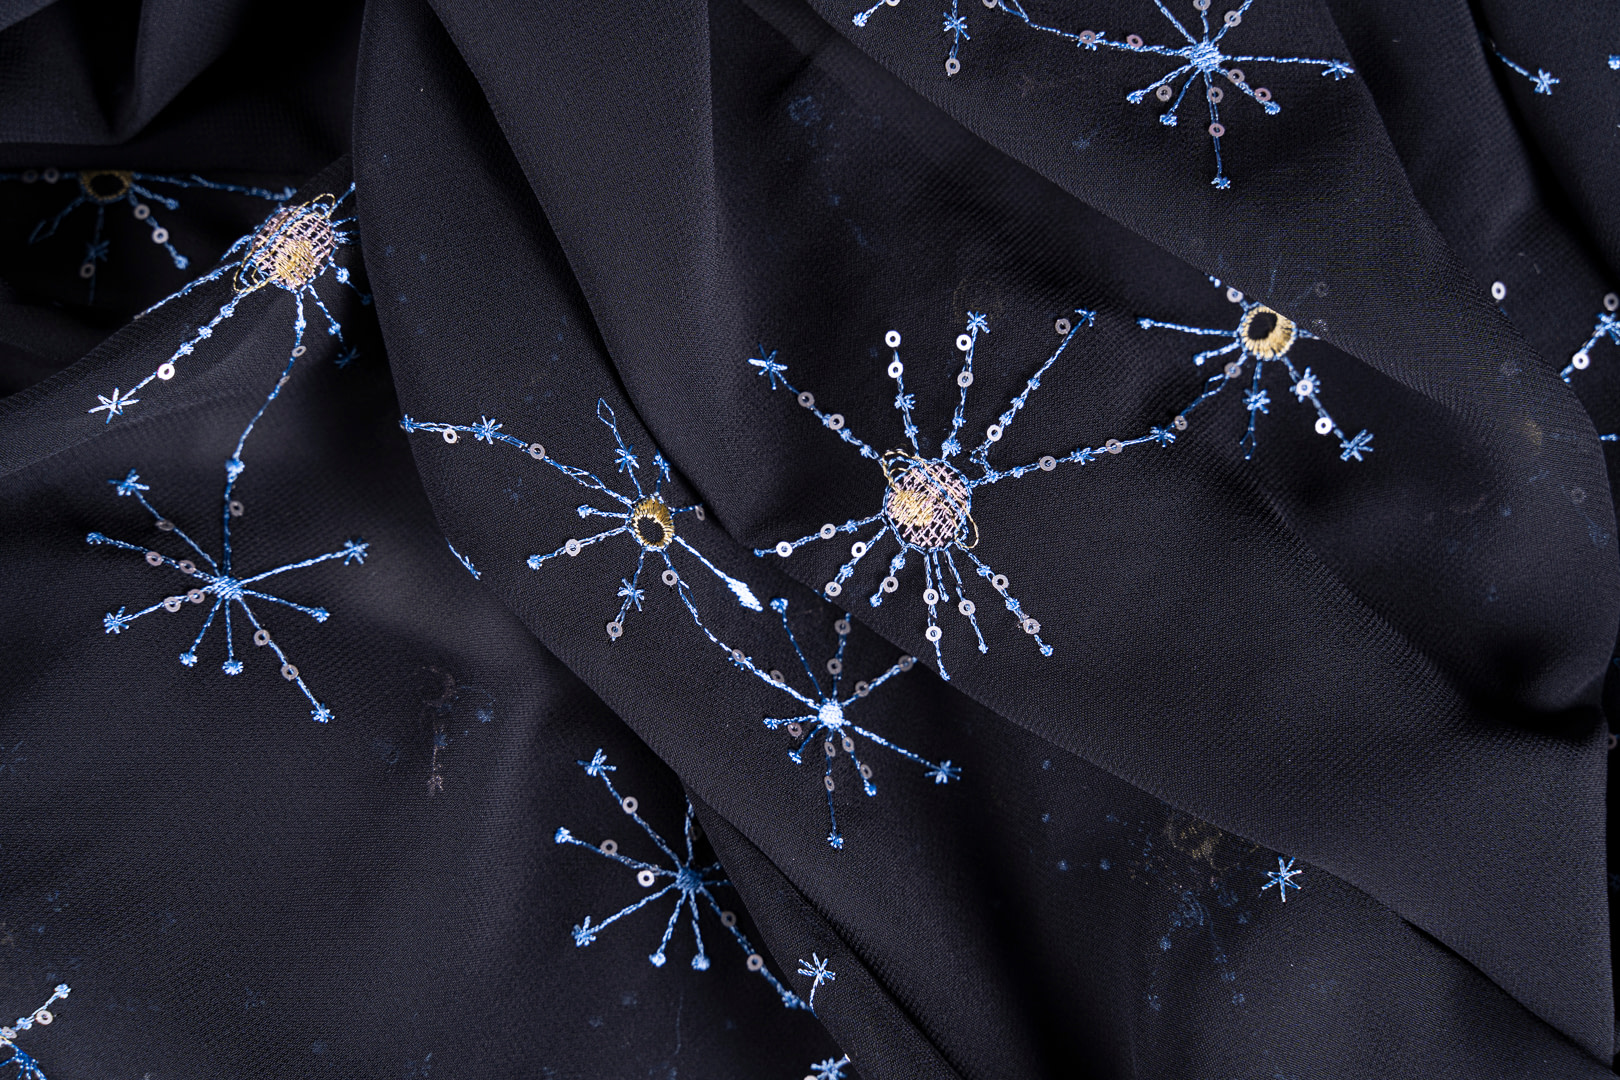 Tessuto Blu, Nero in Poliestere, Viscosa per Abbigliamento UN001196